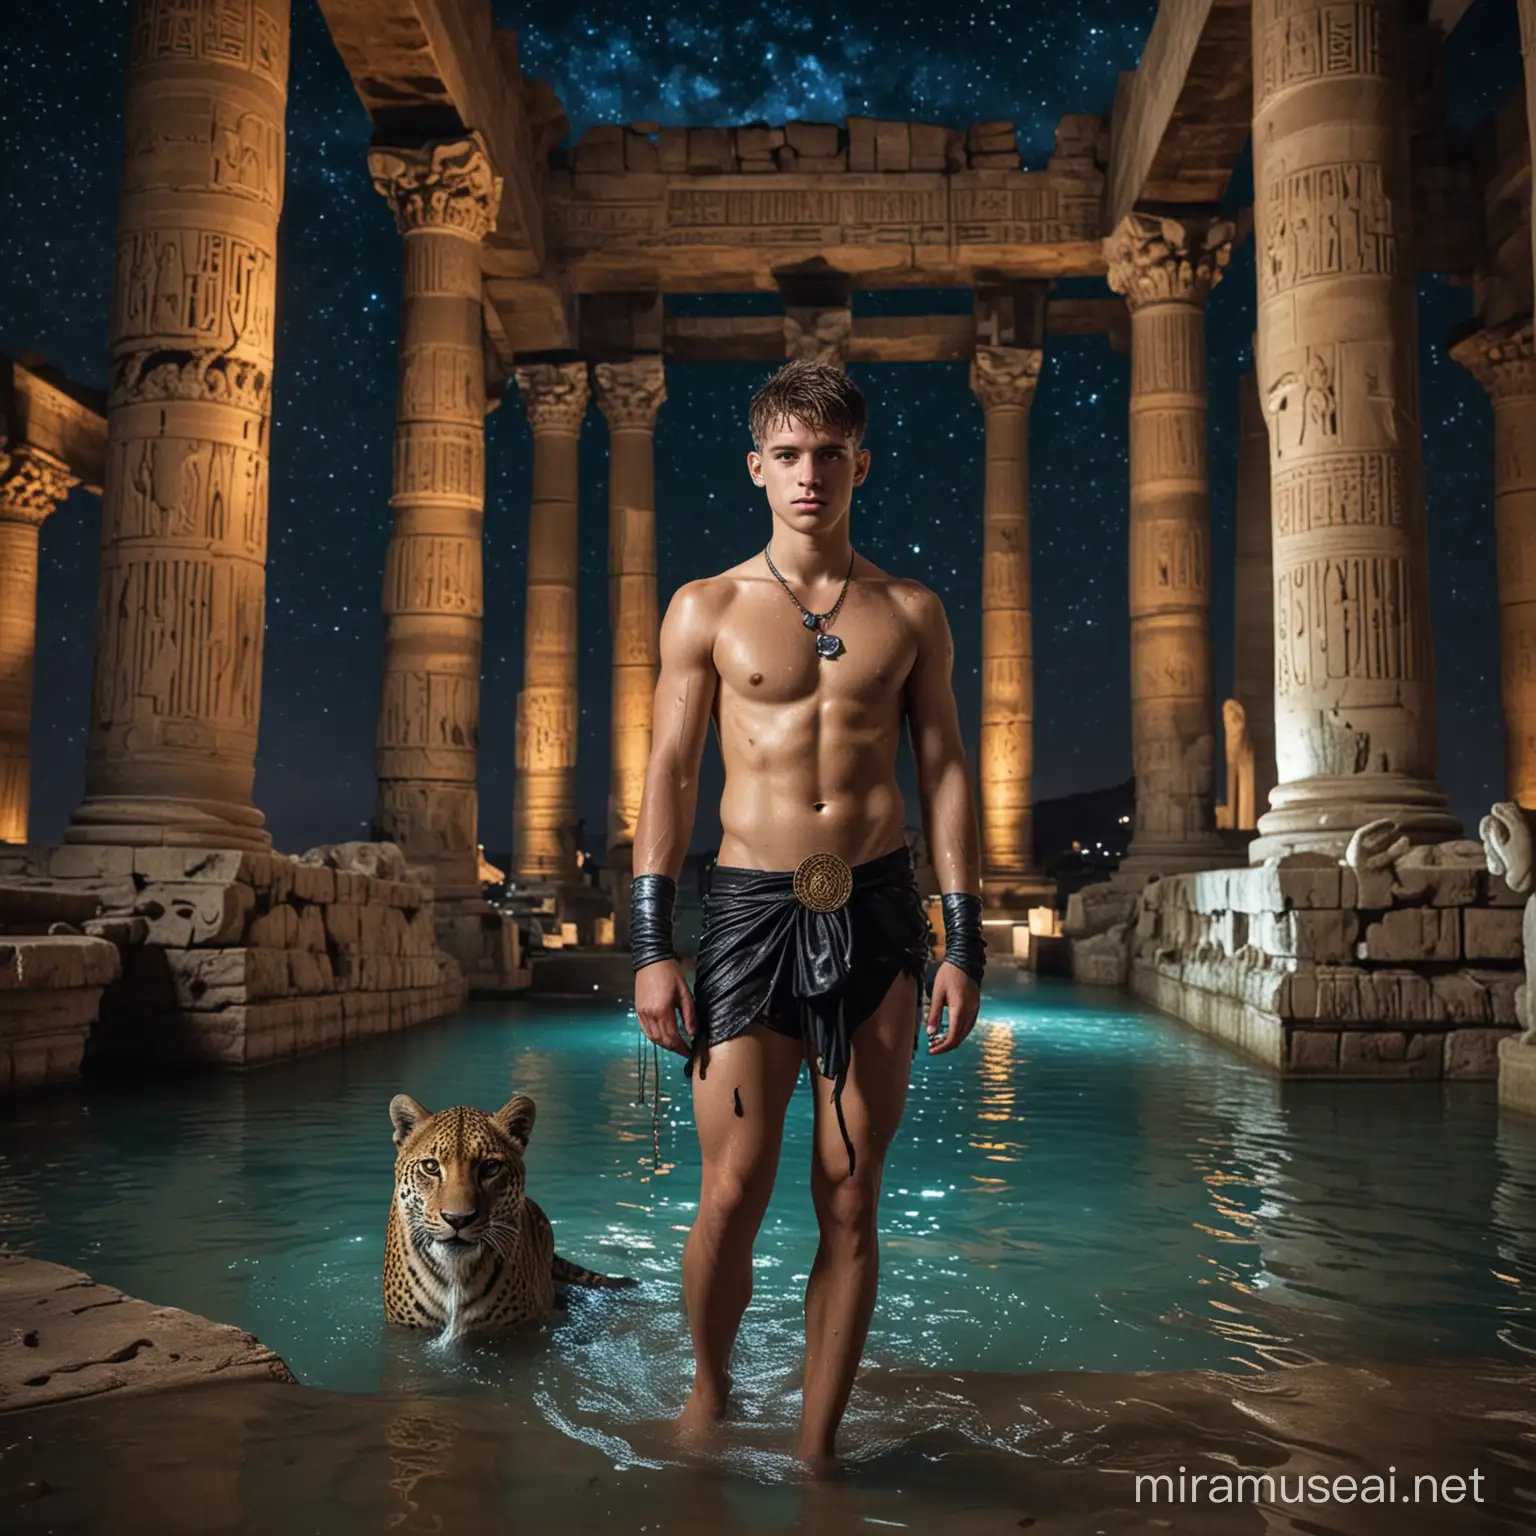 Muscular Roman Teen at Bastet Statue in Neonlit Egyptian Oasis